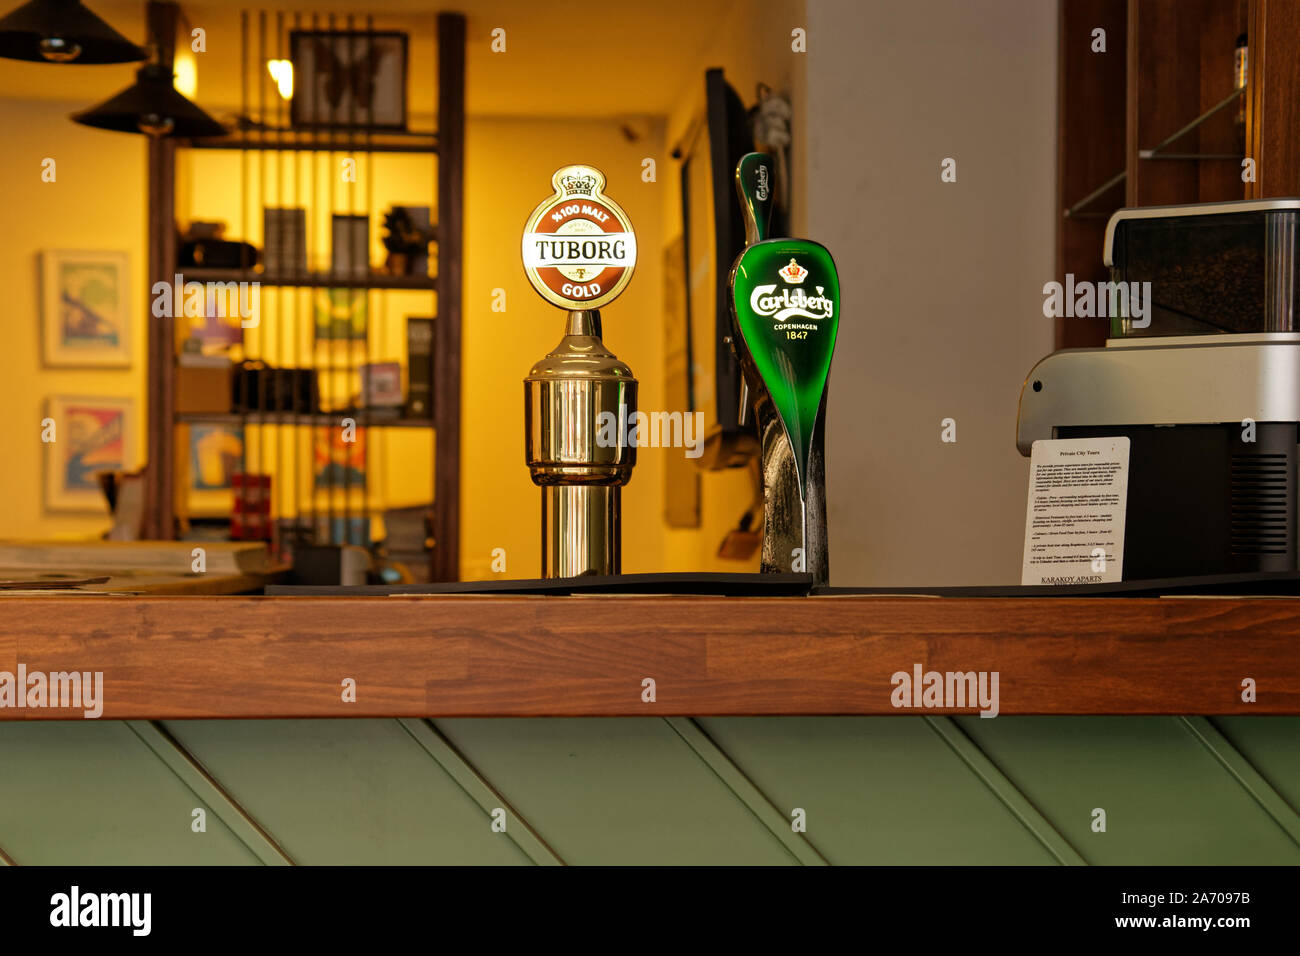 Cerveza tira de famosas marcas de cerveza Tuborg y Carslberg en un mostrador de bar restaurante. Foto de stock